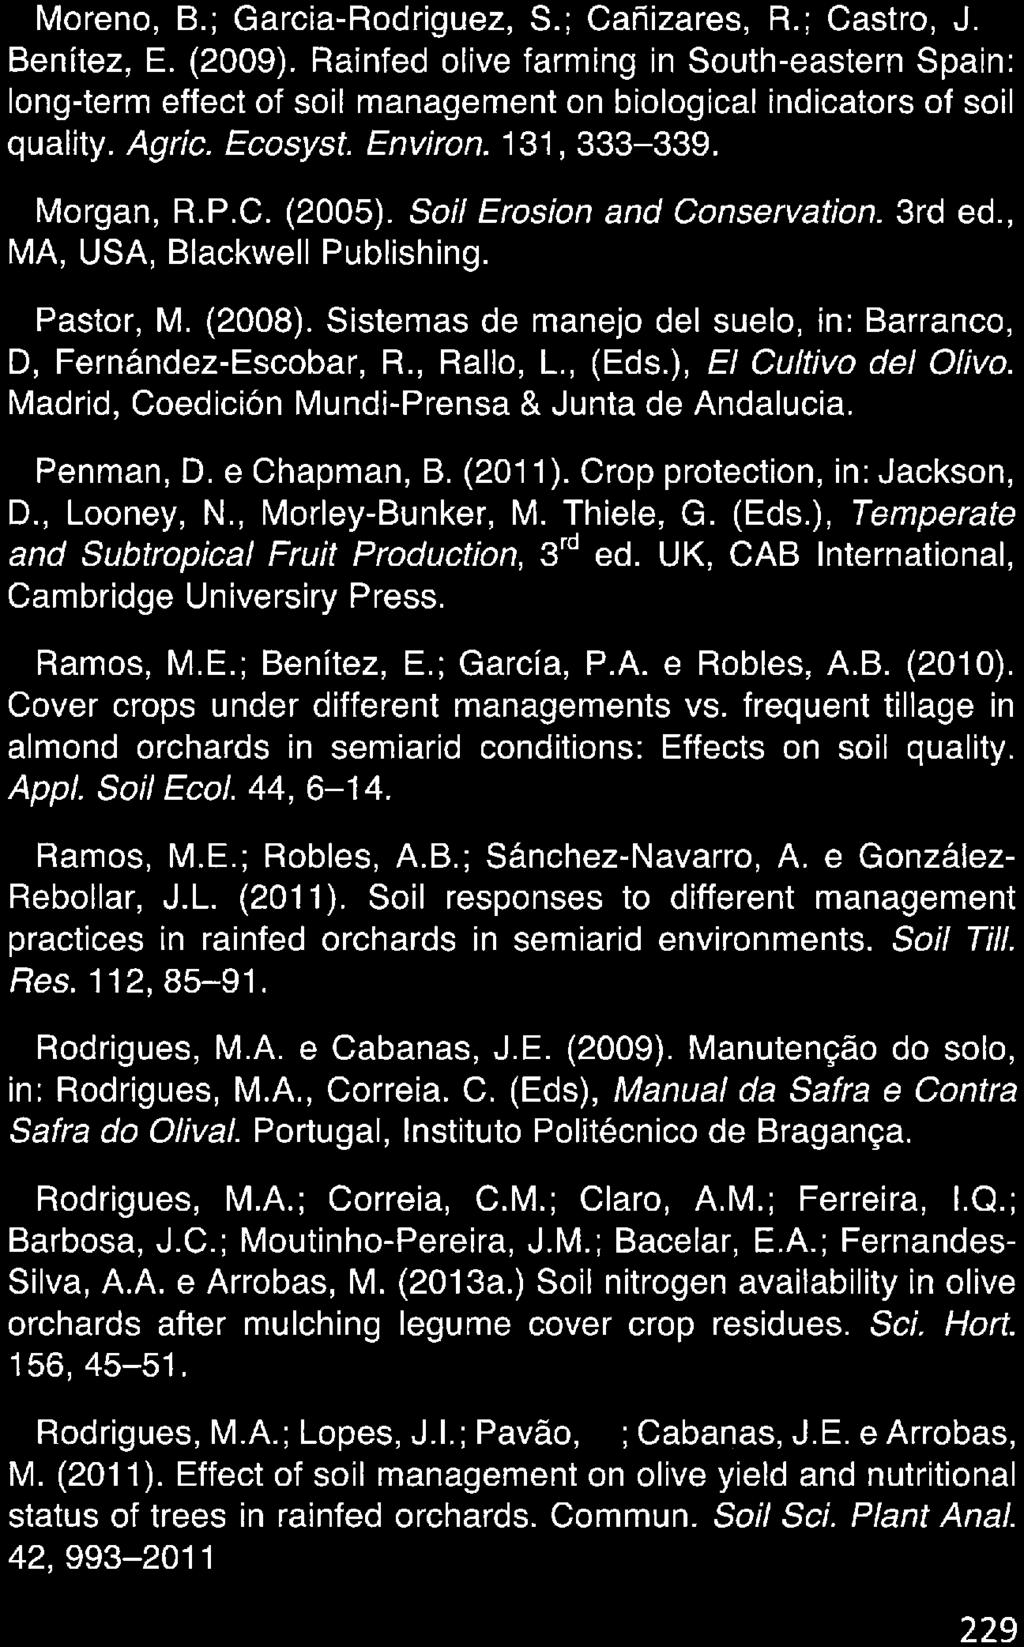 Moreno, B. ; Garcia-Rodriguez, S. ; Canizares, R. ; Castro, J. e Benítez, E. (2009).